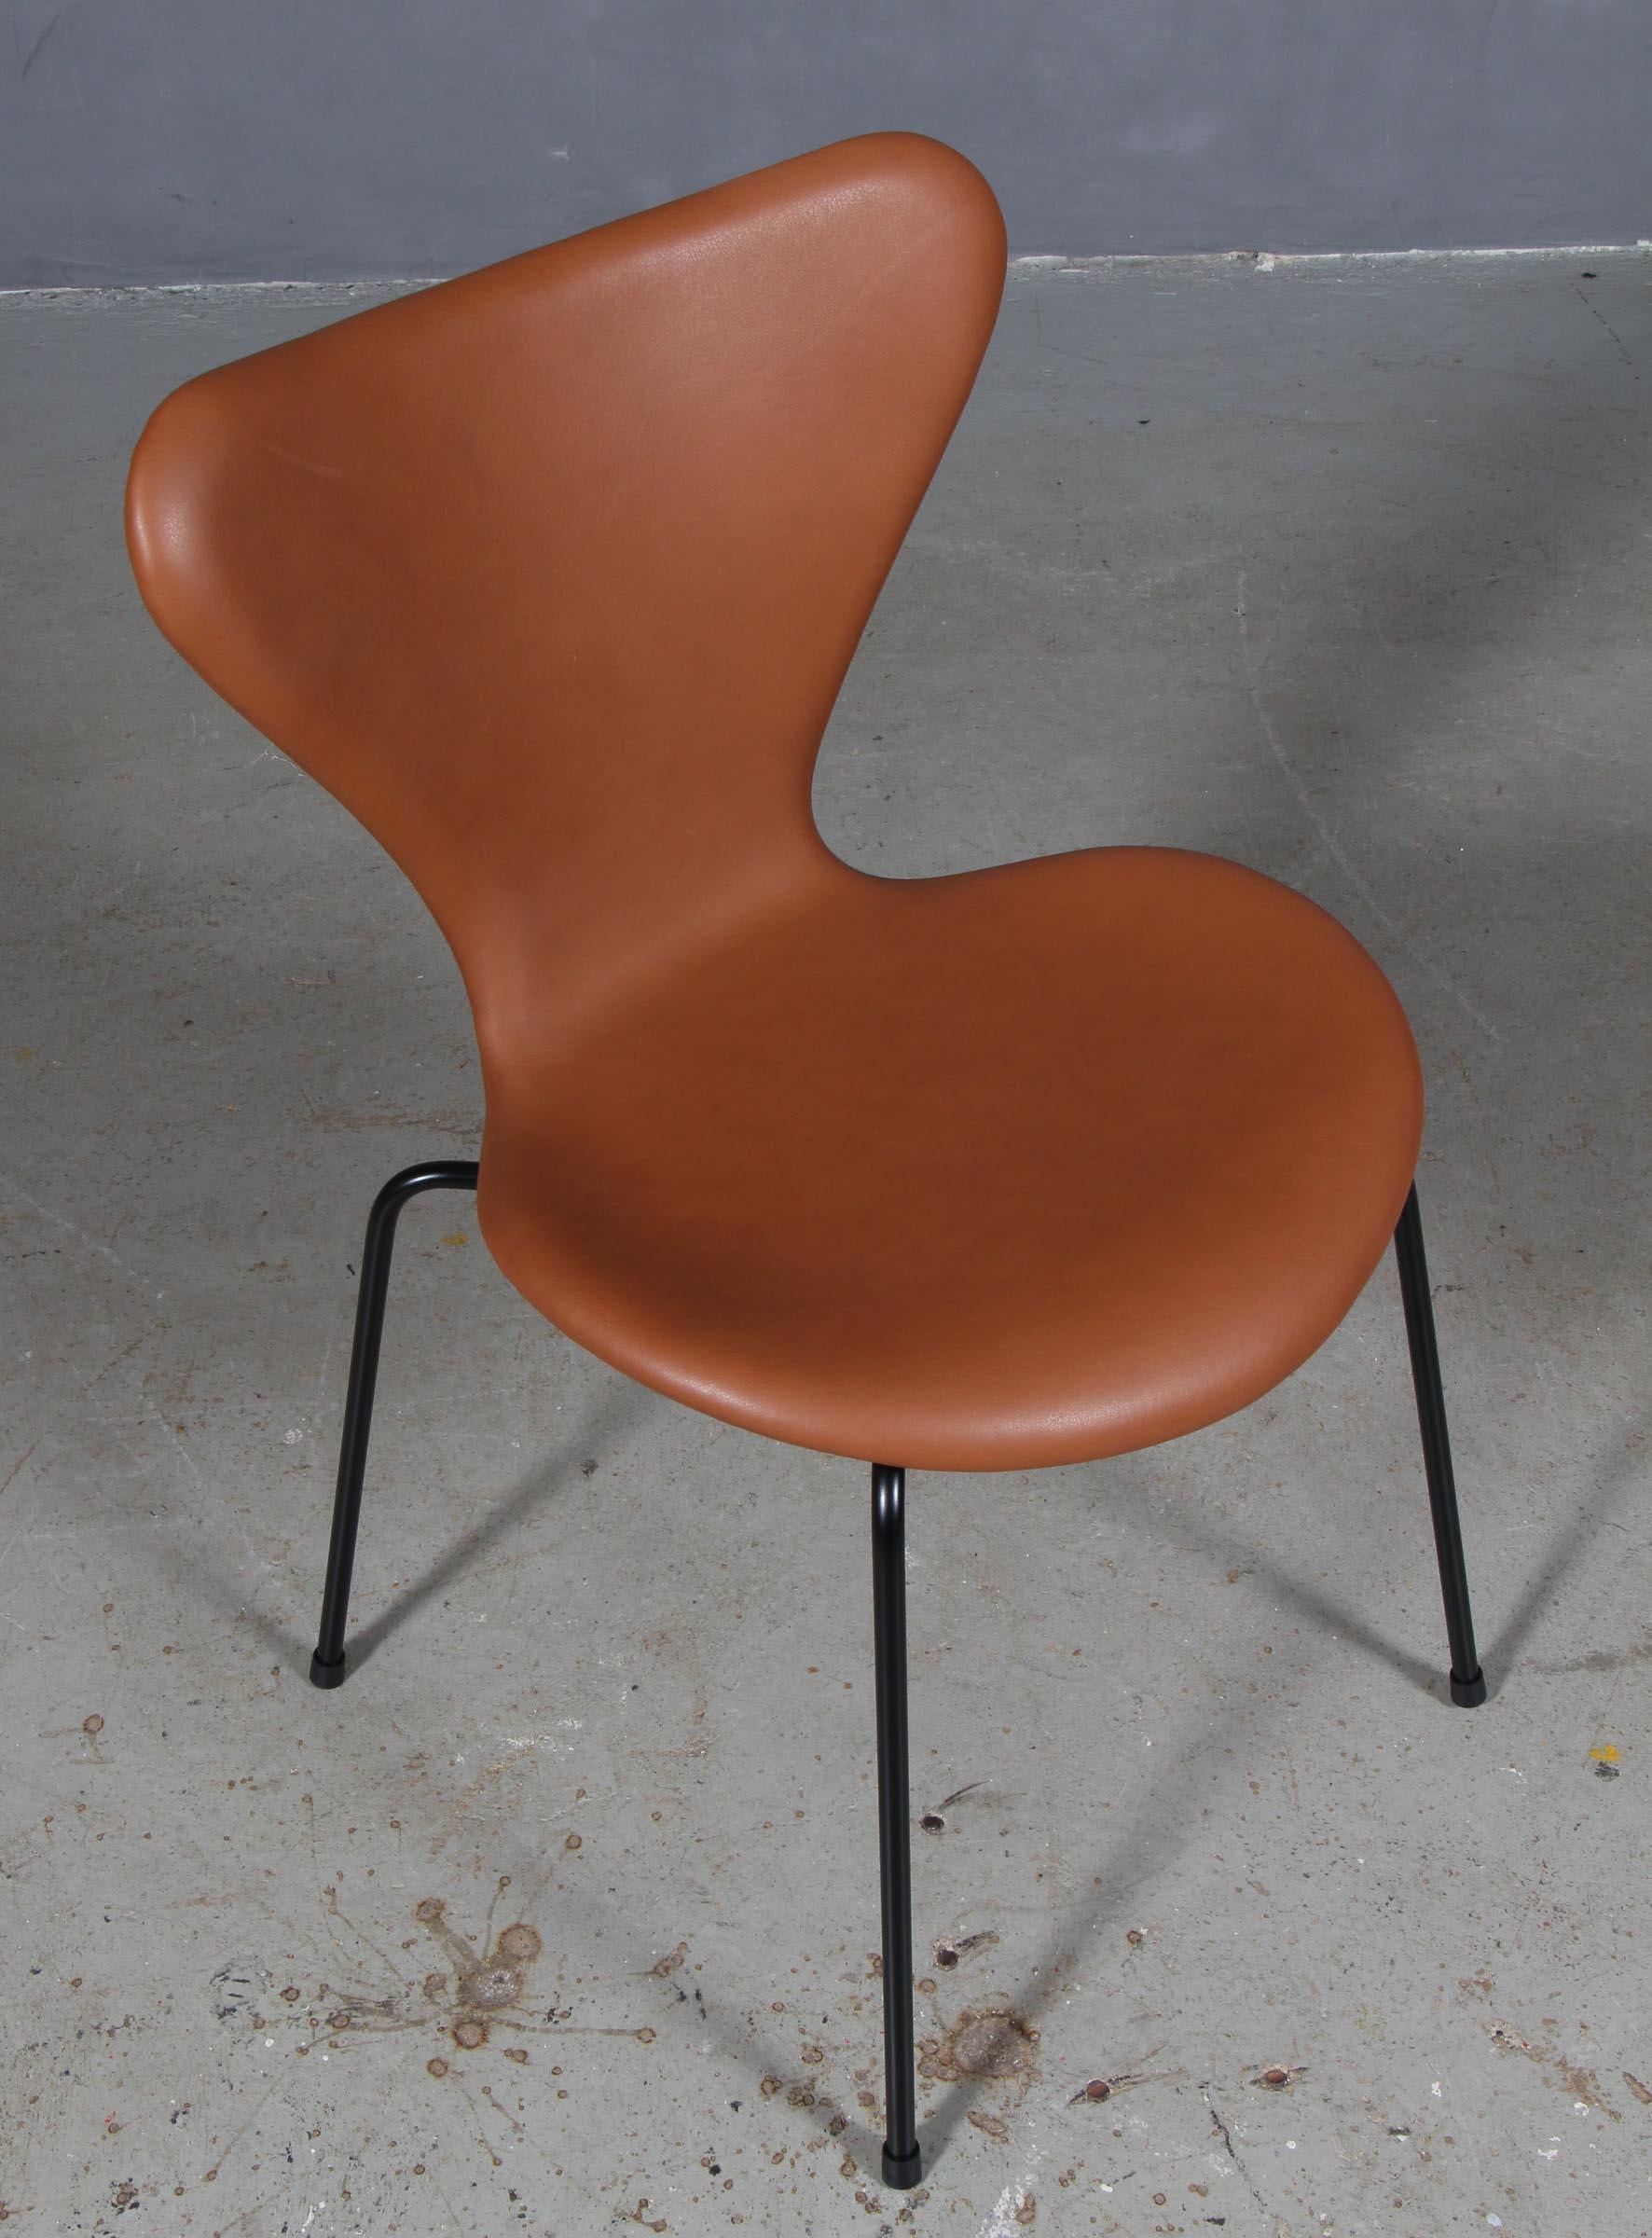 Chaise de salle à manger Arne Jacobsen nouvellement tapissée de cuir aniline pur cognac.

Base en tube d'acier revêtu de poudre.

Modèle 3107 Syveren, fabriqué par Fritz Hansen.